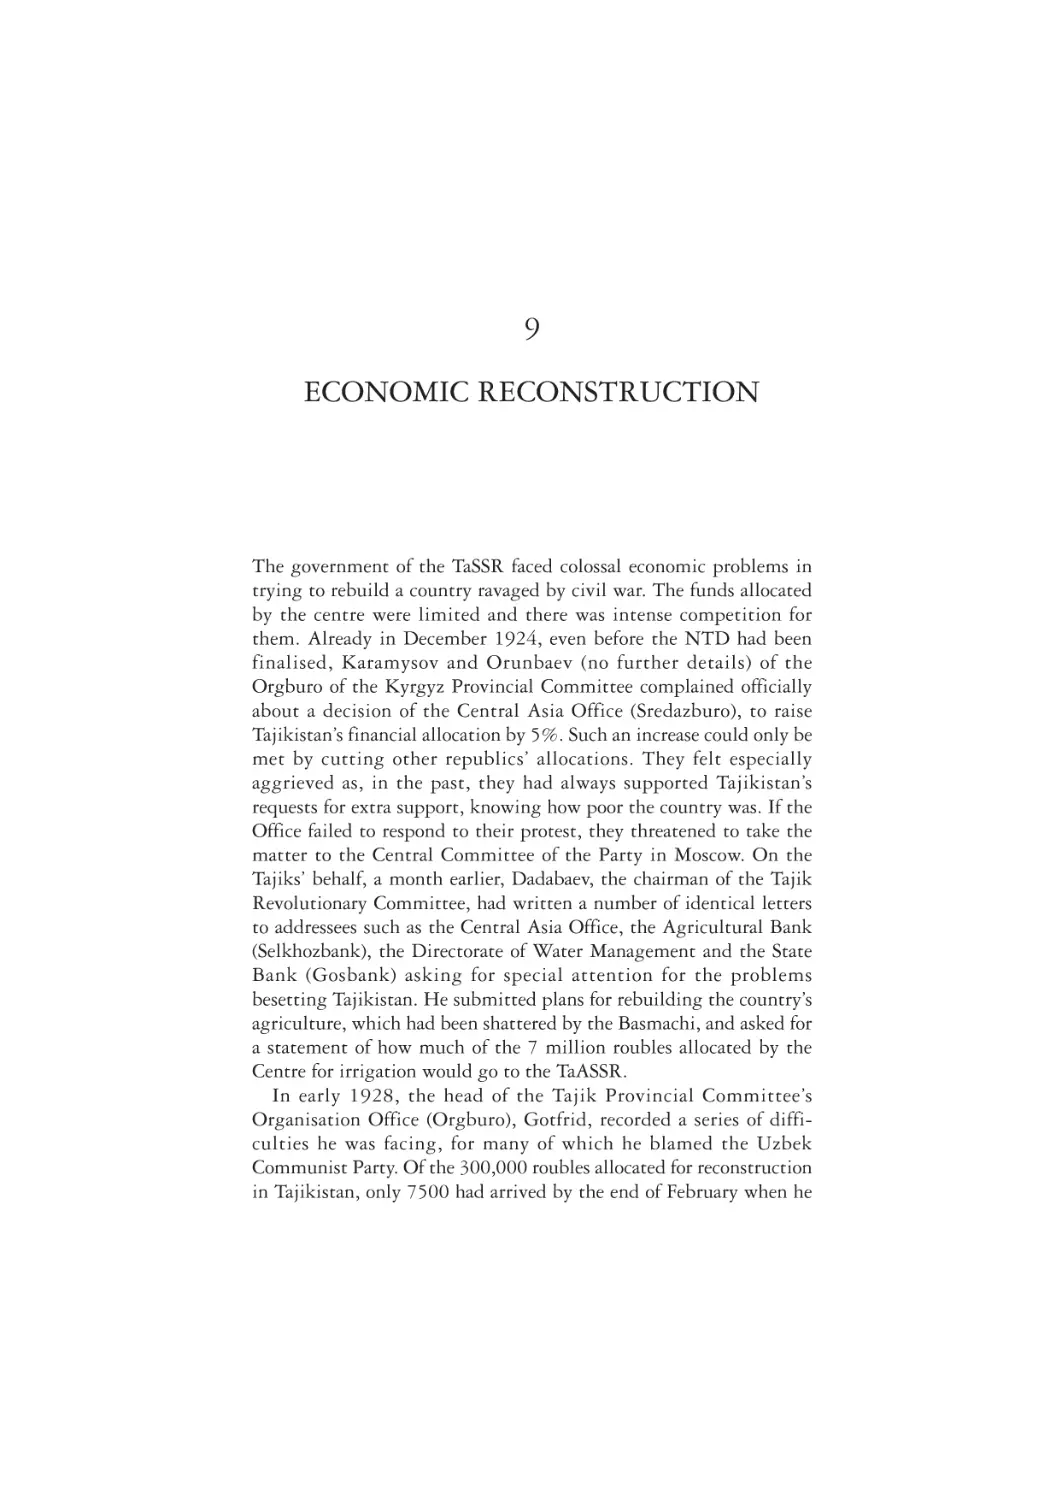 9. Economic Reconstruction